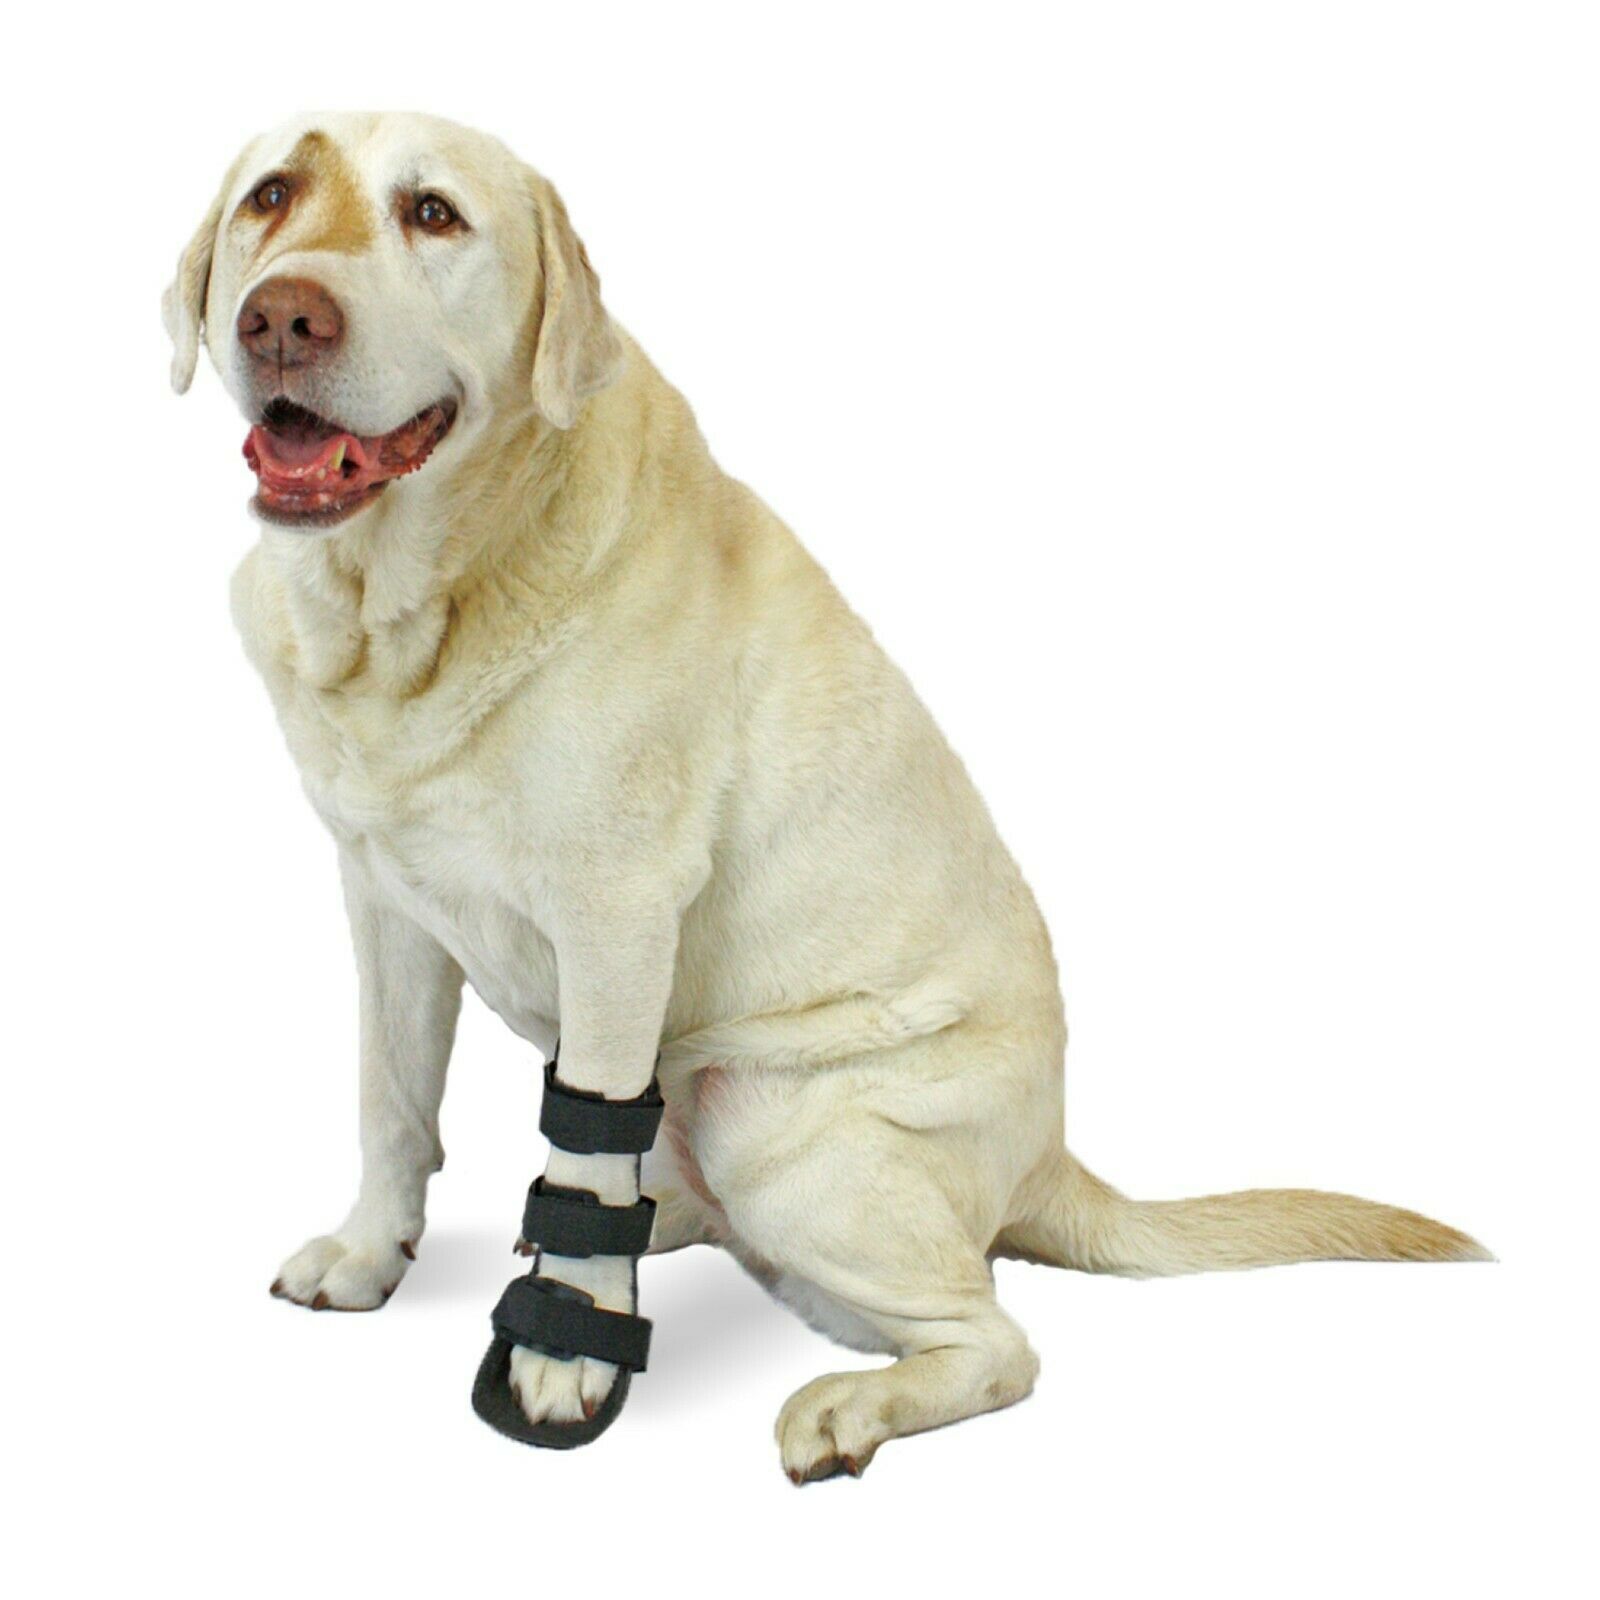 Walkin' Pet Splint For Dogs | Front Leg Foot Splint For Dogs With Arthritis